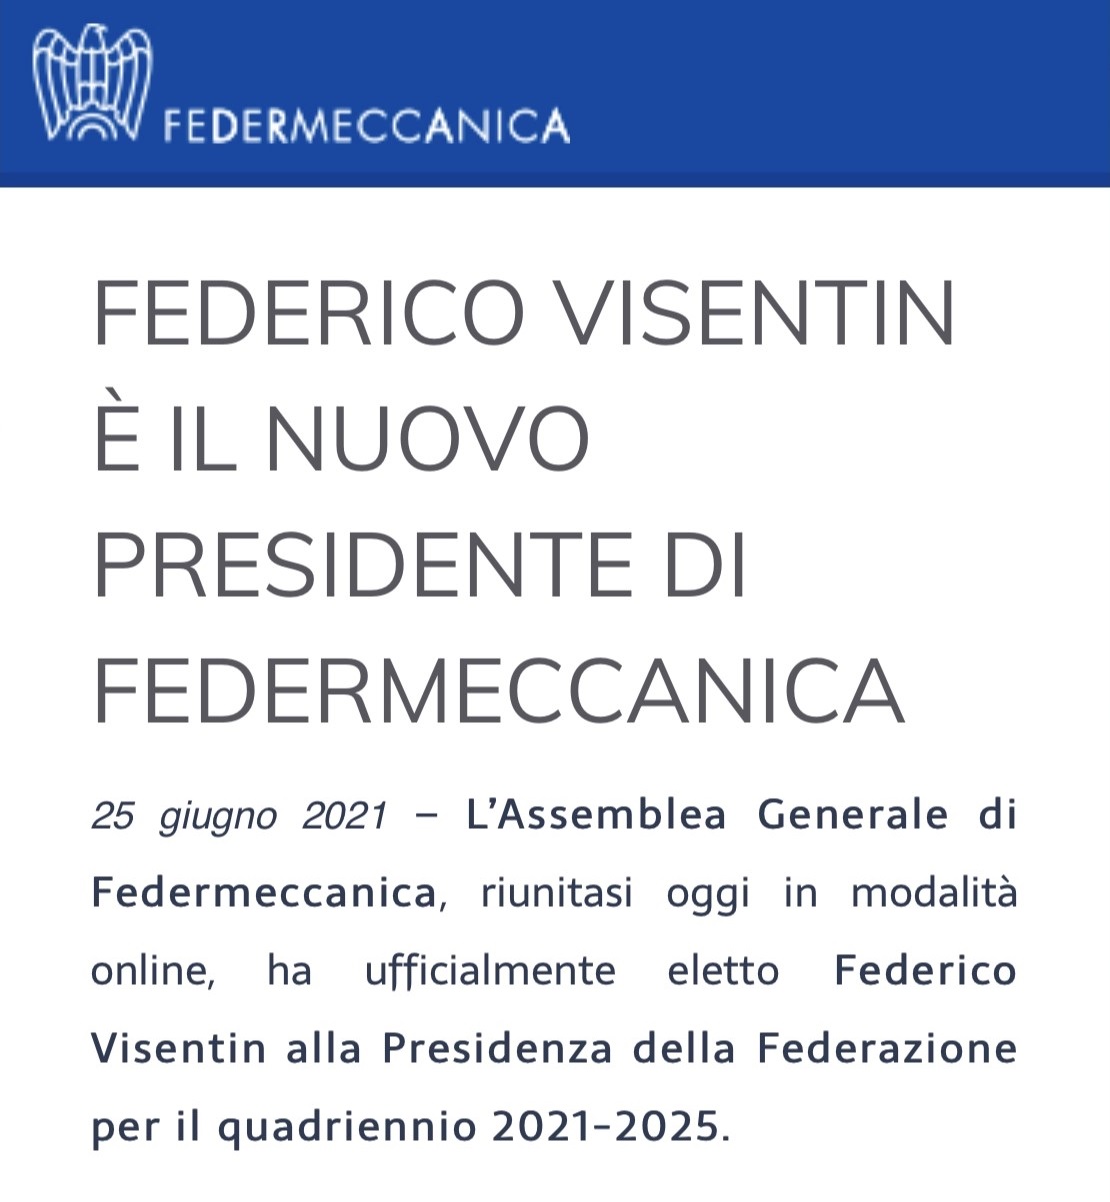 Federico Visentin è il nuovo presidente di federmeccanica